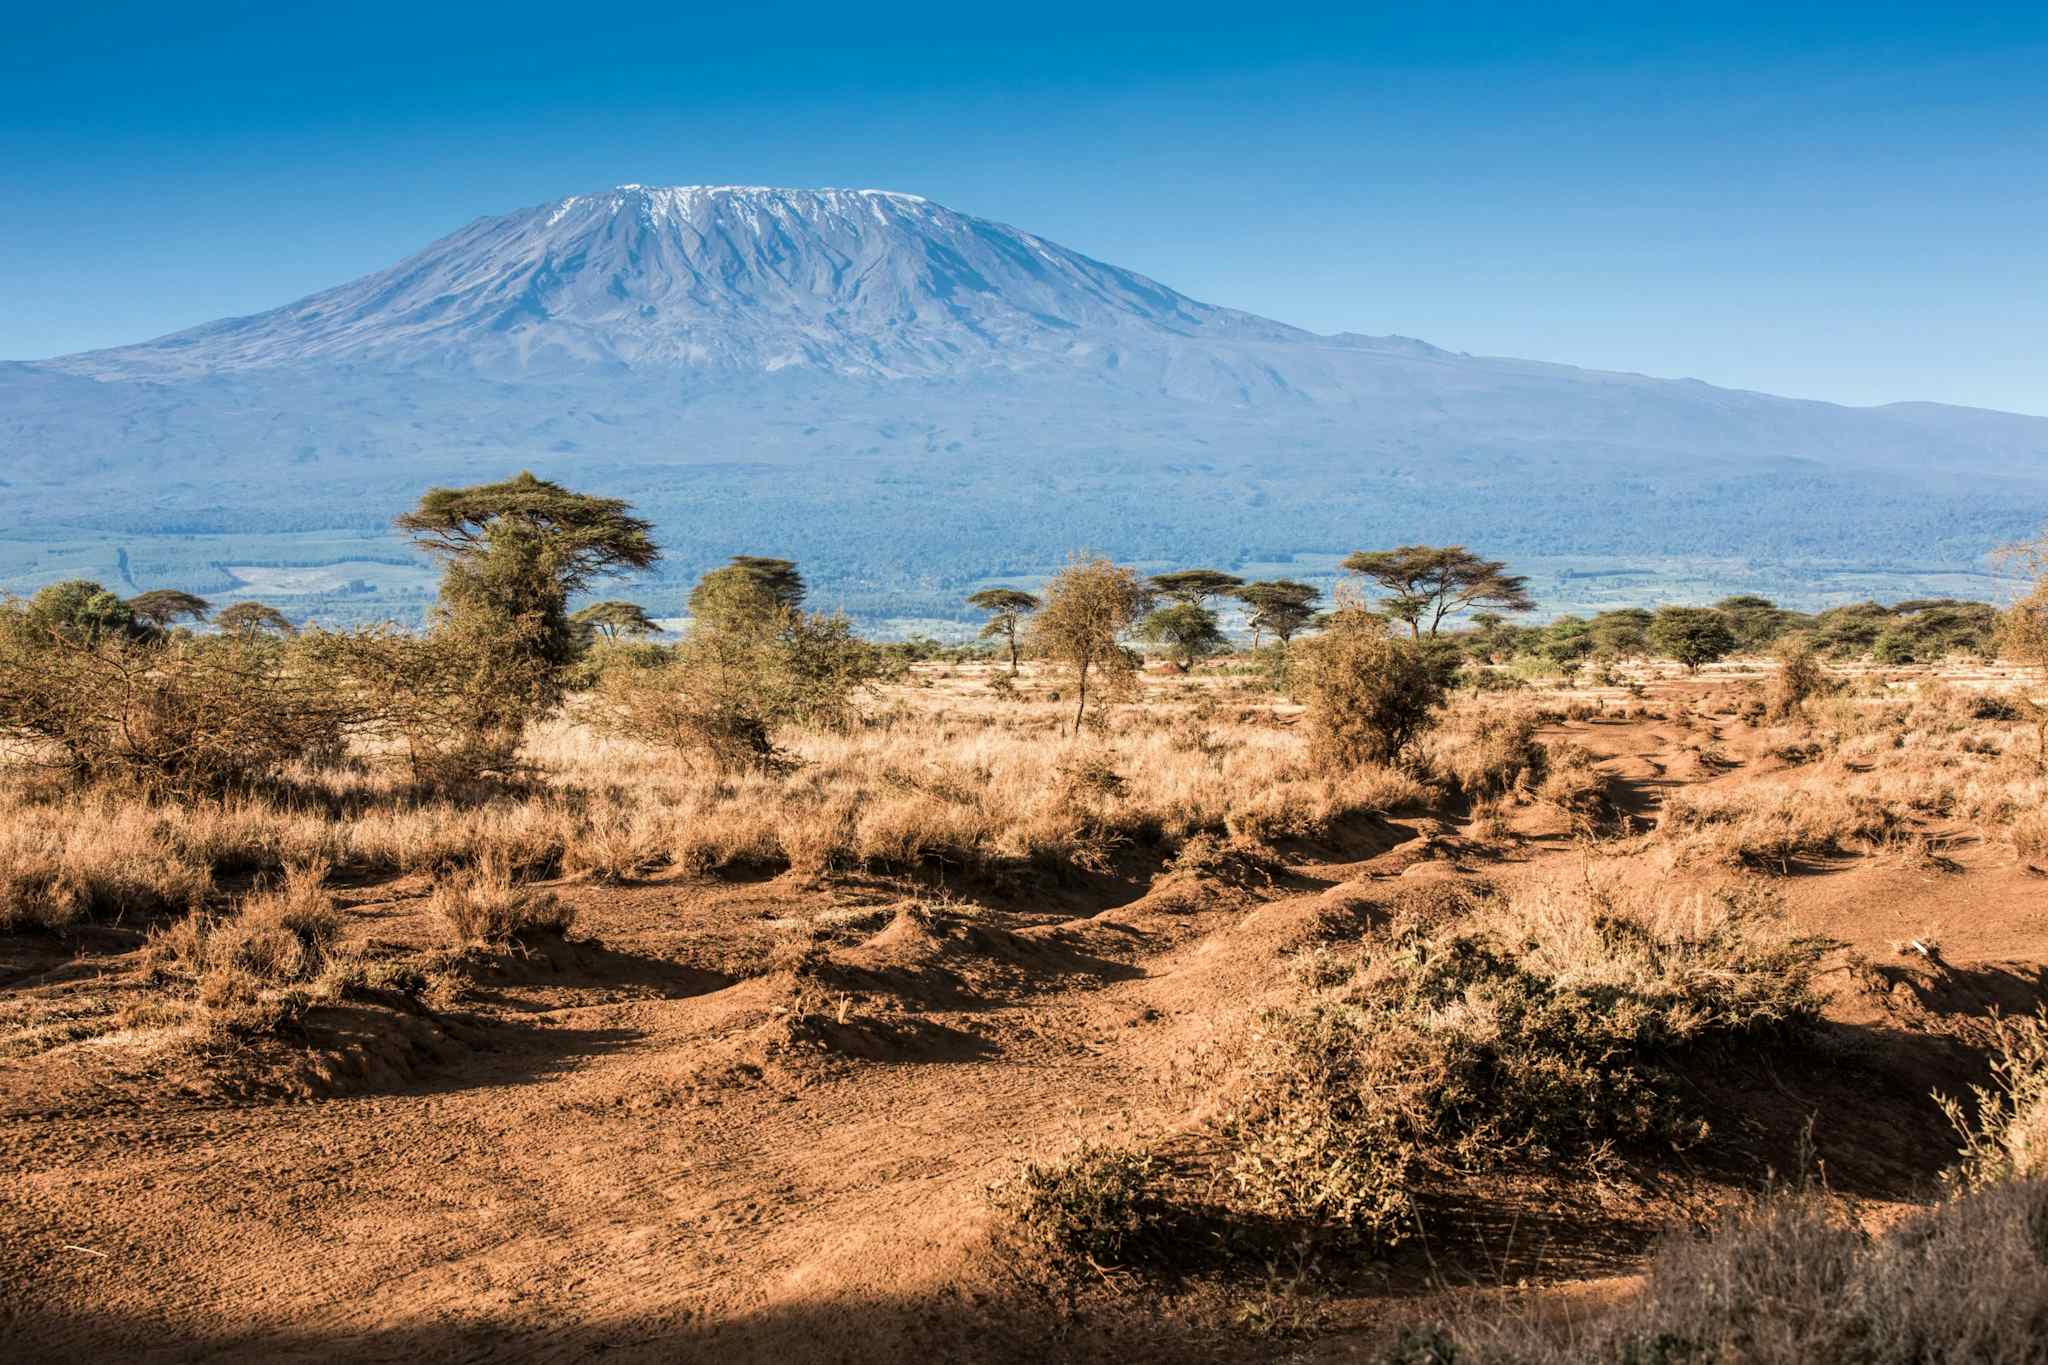 Kilimanjaro and Acacia trees, Tanzania.